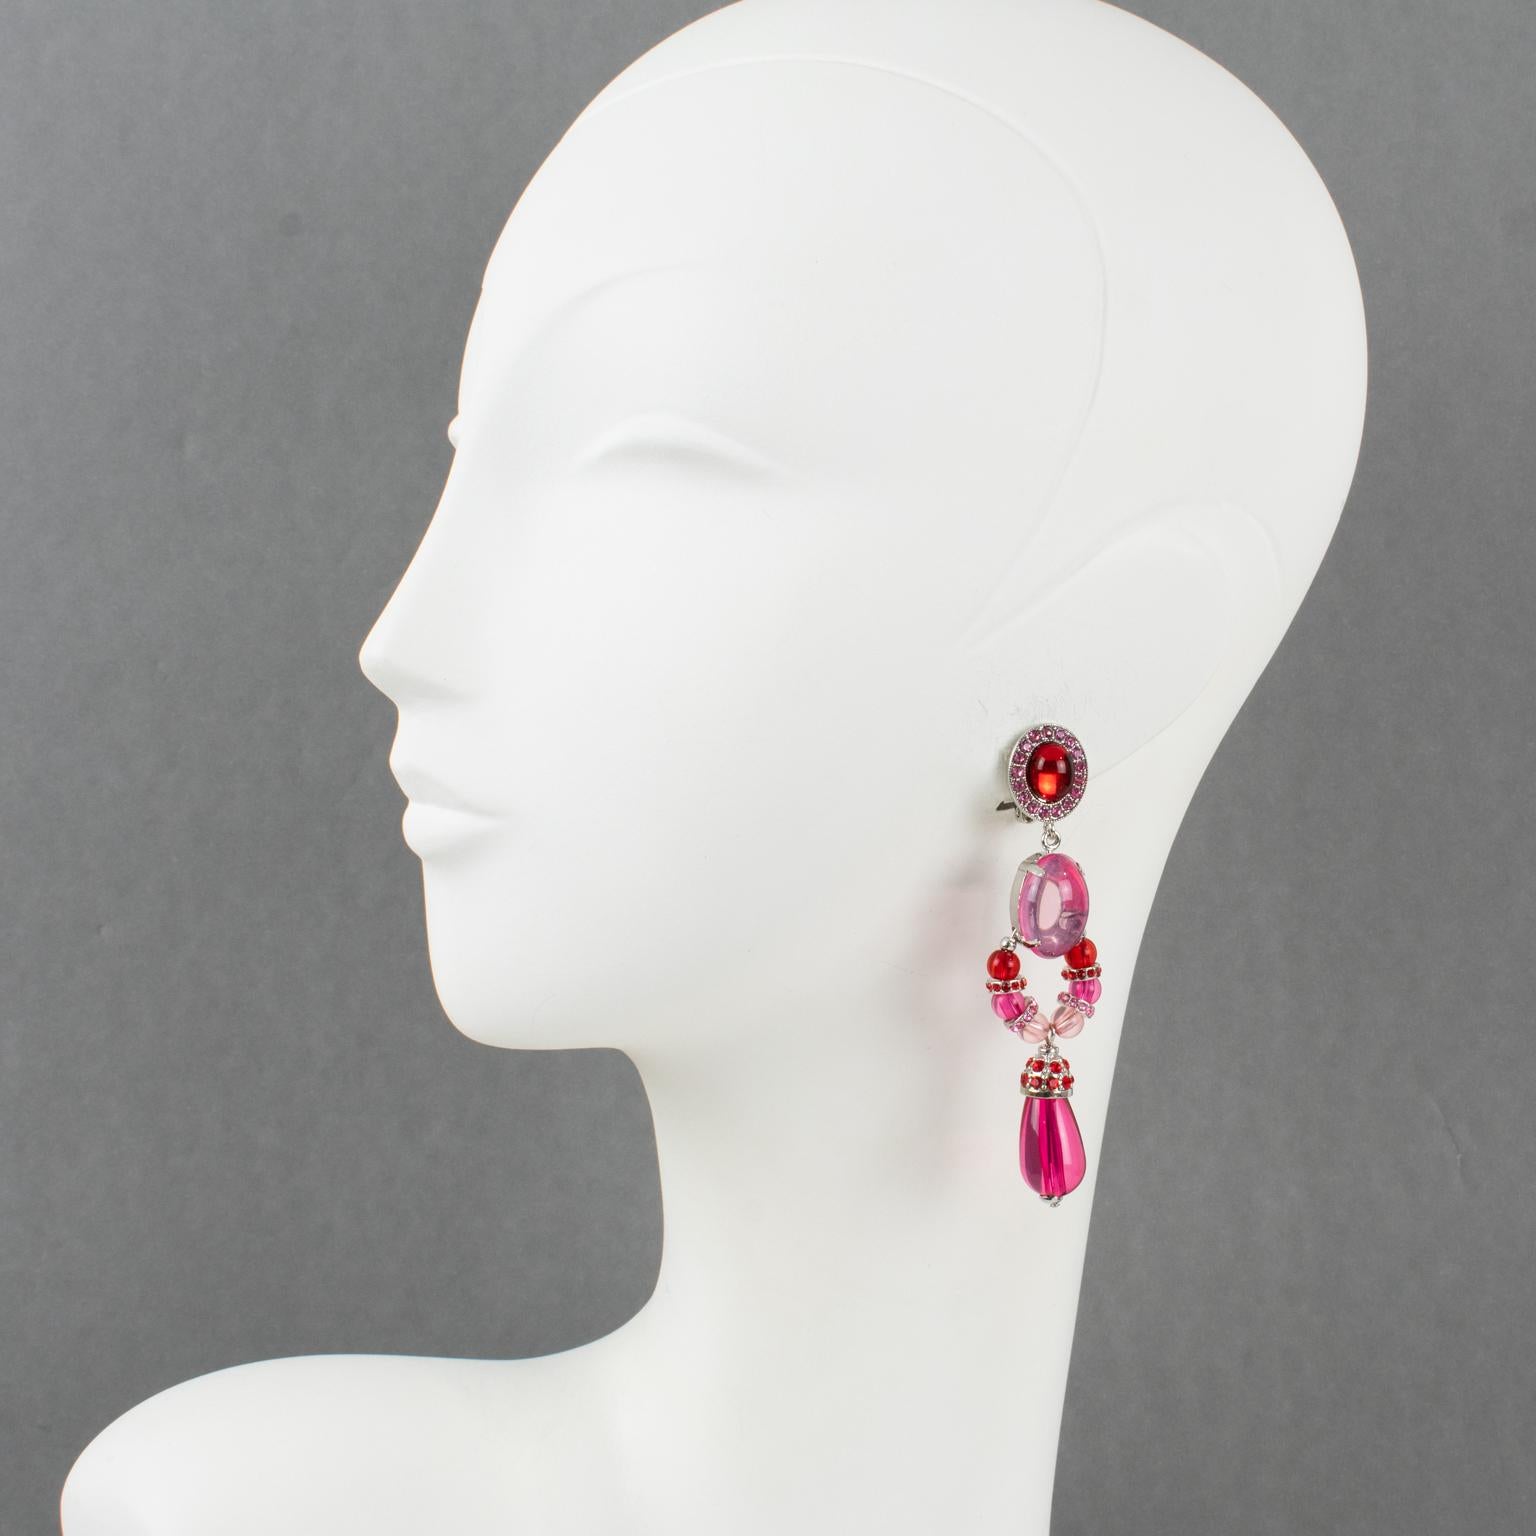 Diese raffinierten Carlo Zini Ohrringe haben eine lange geometrische Form mit versilbertem Metallrahmen, der mit roten, pinkfarbenen und puderfarbenen Strasssteinen und Cabochons verziert ist, und baumeln an tropfenförmigen Perlen. Sie sind auf der